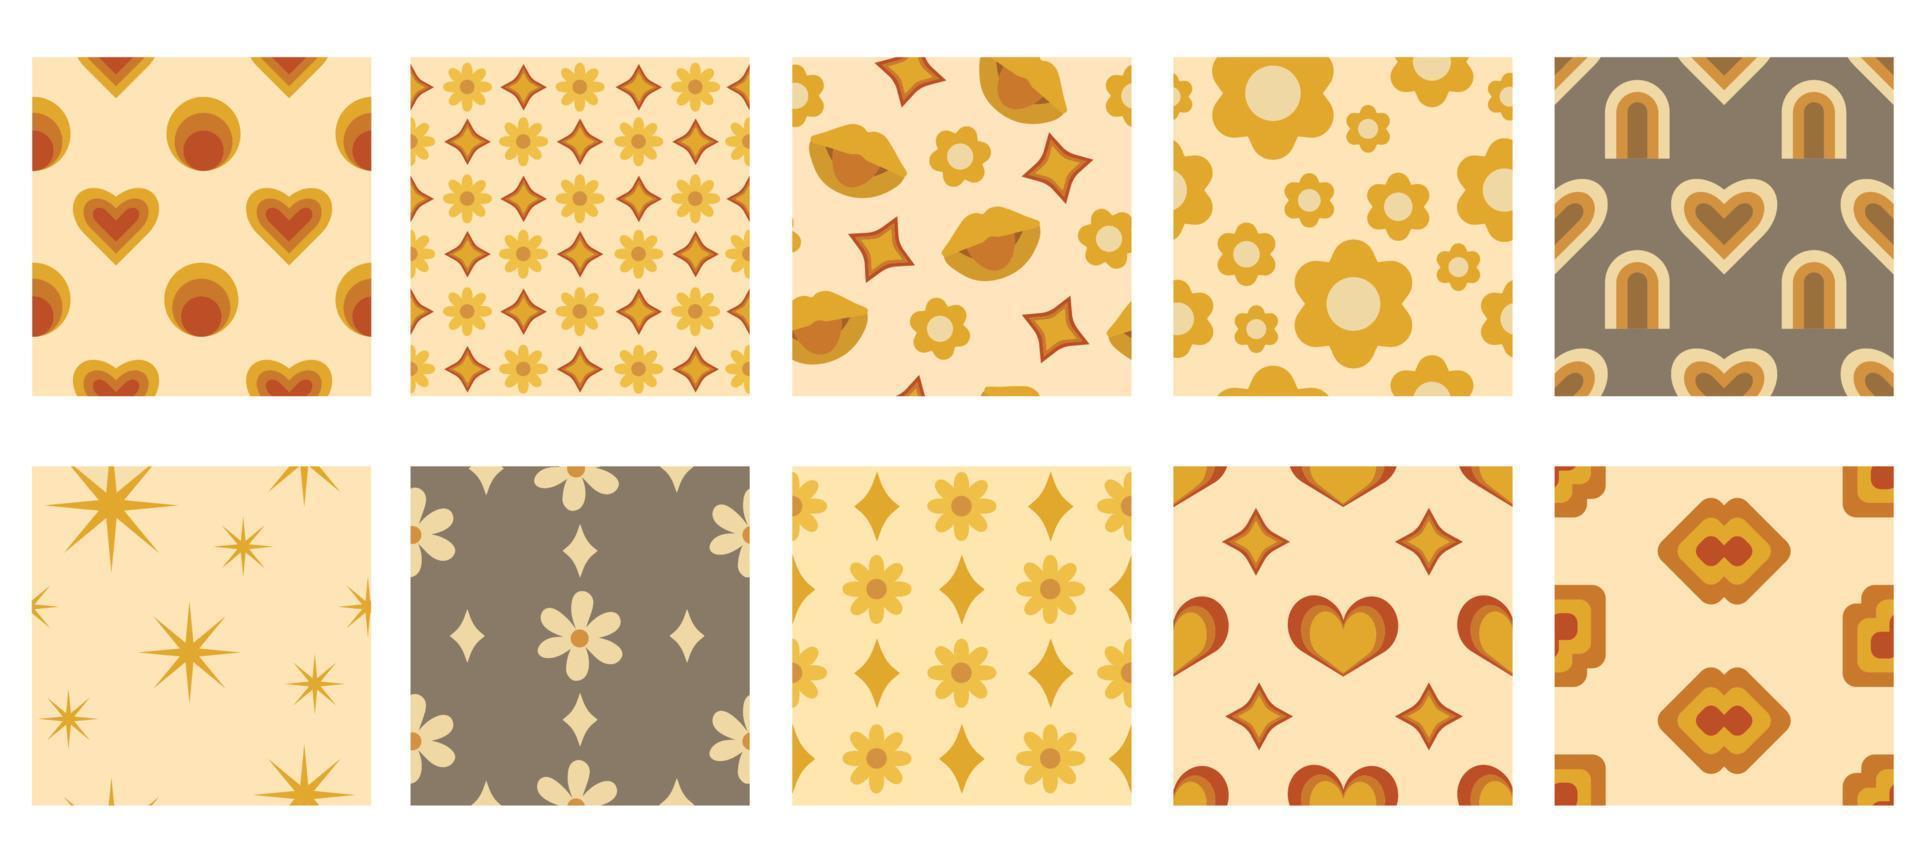 eine Reihe von Mustern im Retro-Stil der 70er Jahre. abstrakte Muster. Retro-Muster. vektor